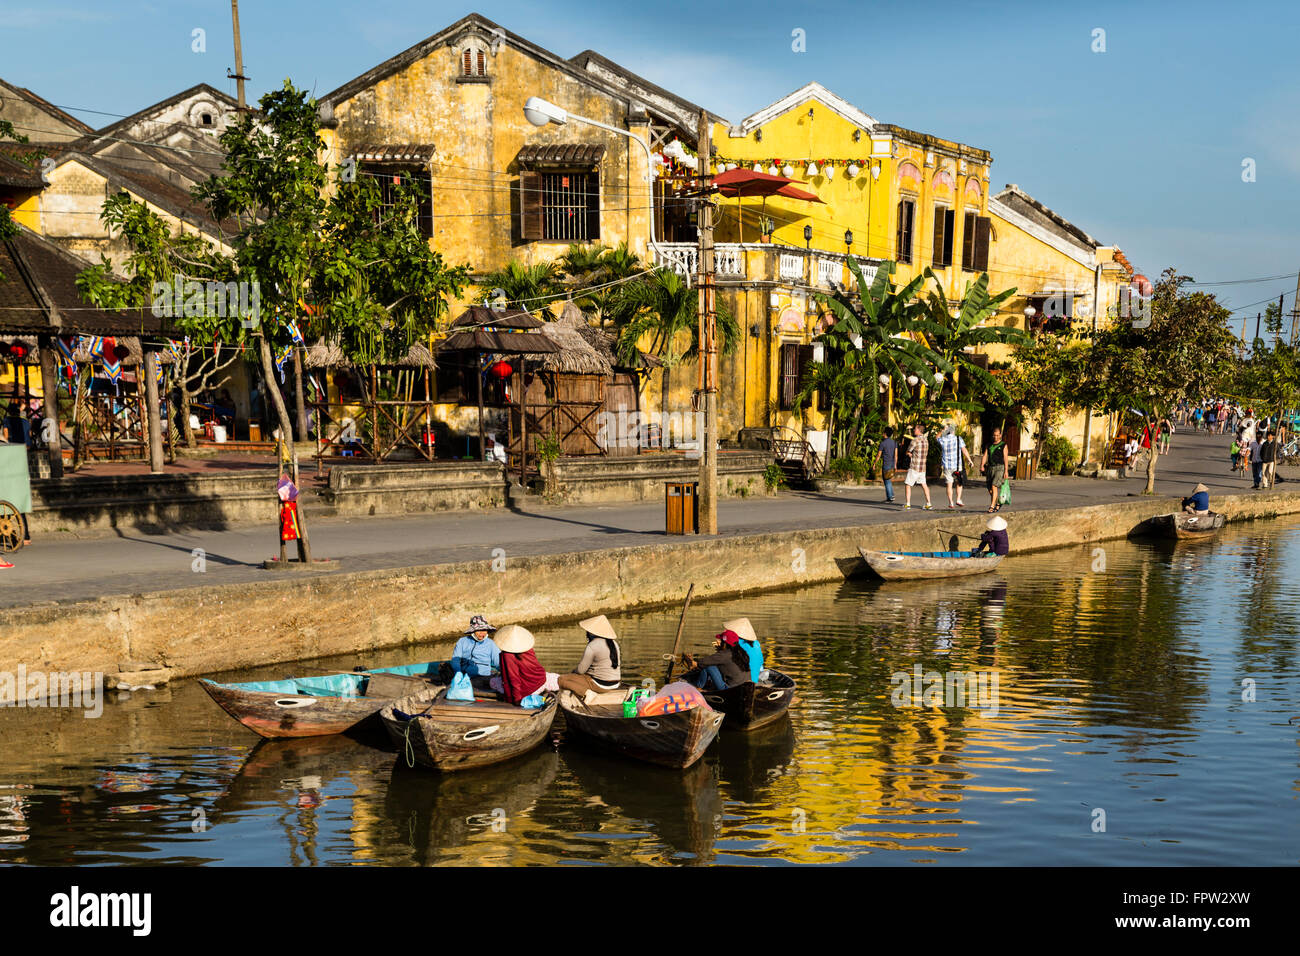 L'architecture coloniale, de la vieille ville de Hoi An, Vietnam Banque D'Images